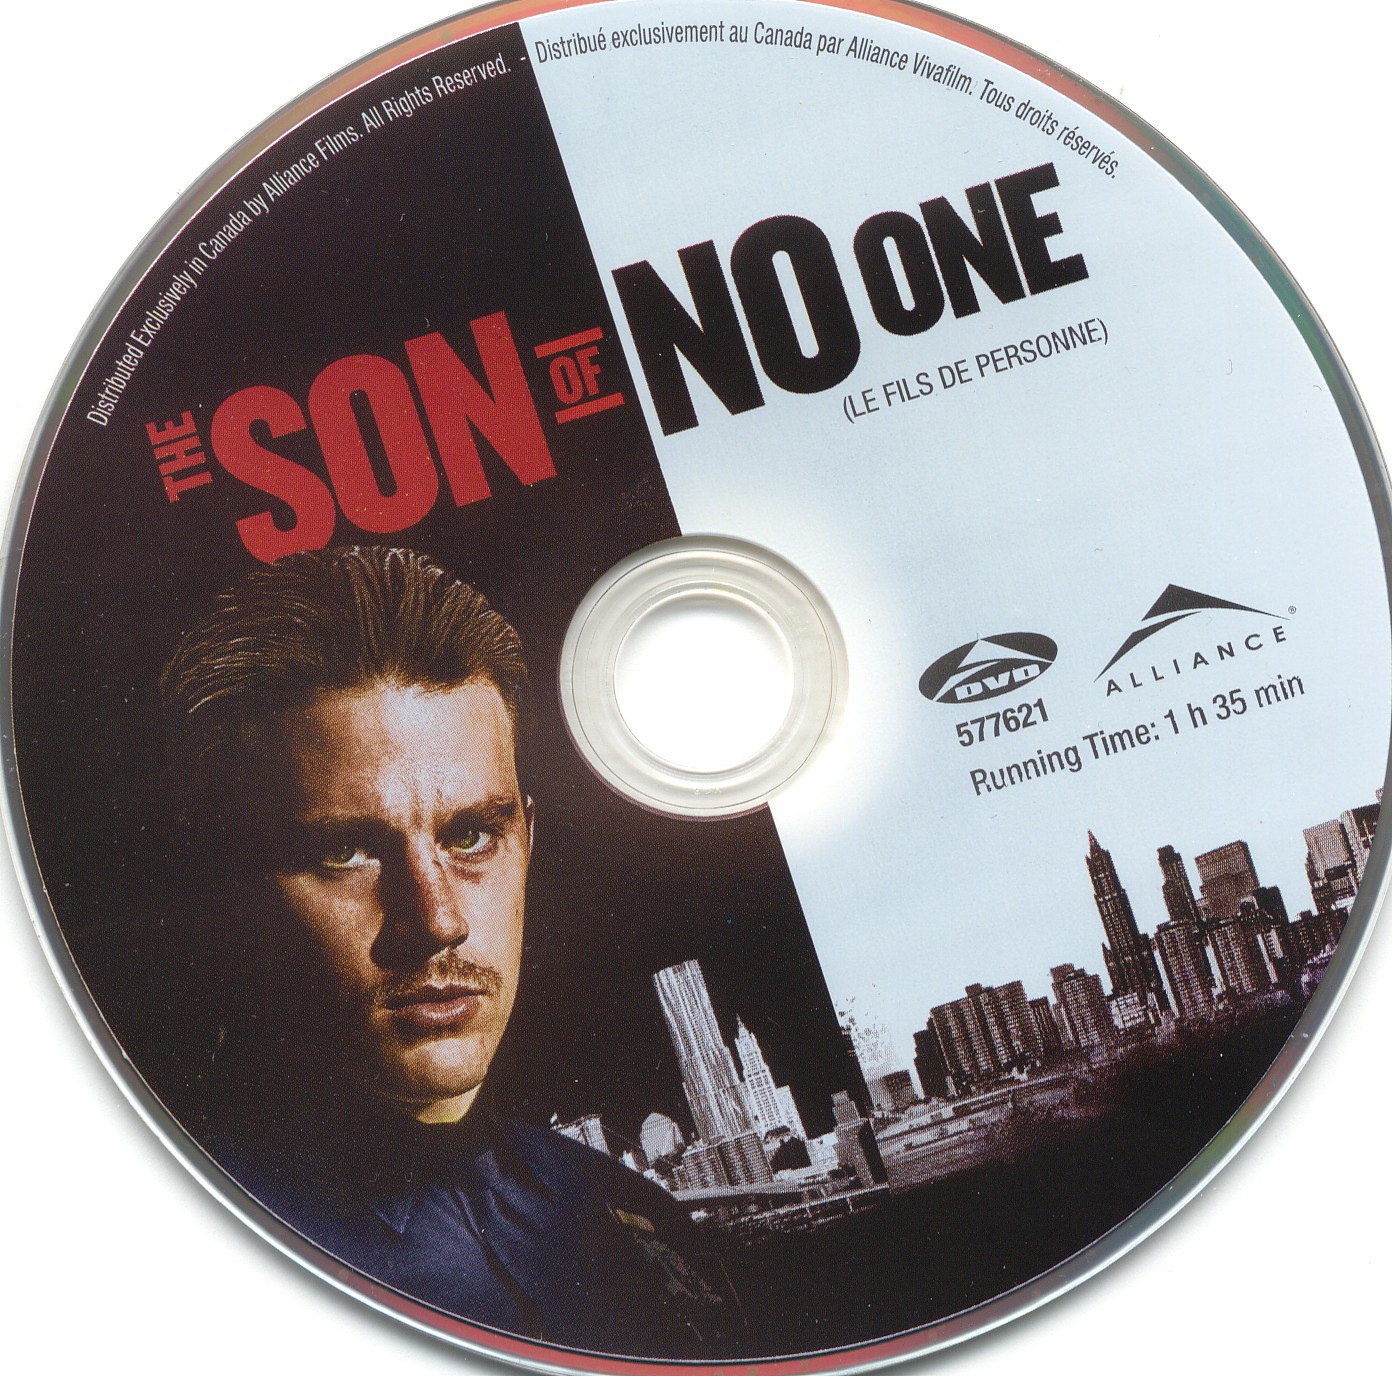 The son of no one - Le fils de personne (Canadienne)